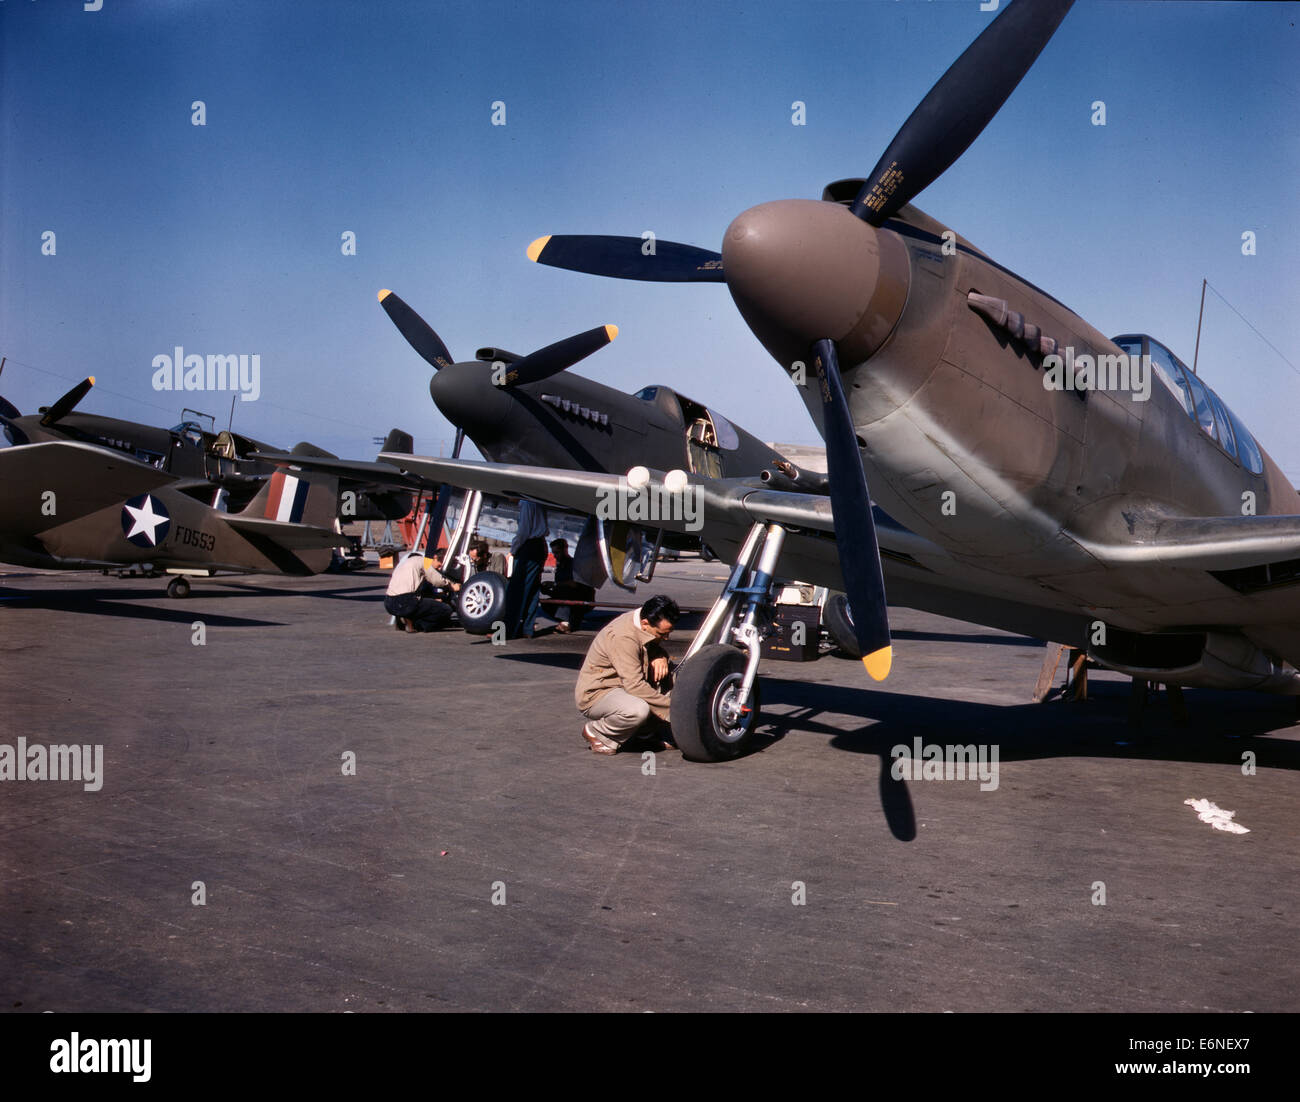 P-51 ('Mustang') les avions de combat en cours de préparation pour vol d'essai à la domaine de la North American Aviation, Inc., usine à Inglewood, Californie, 1942 Banque D'Images